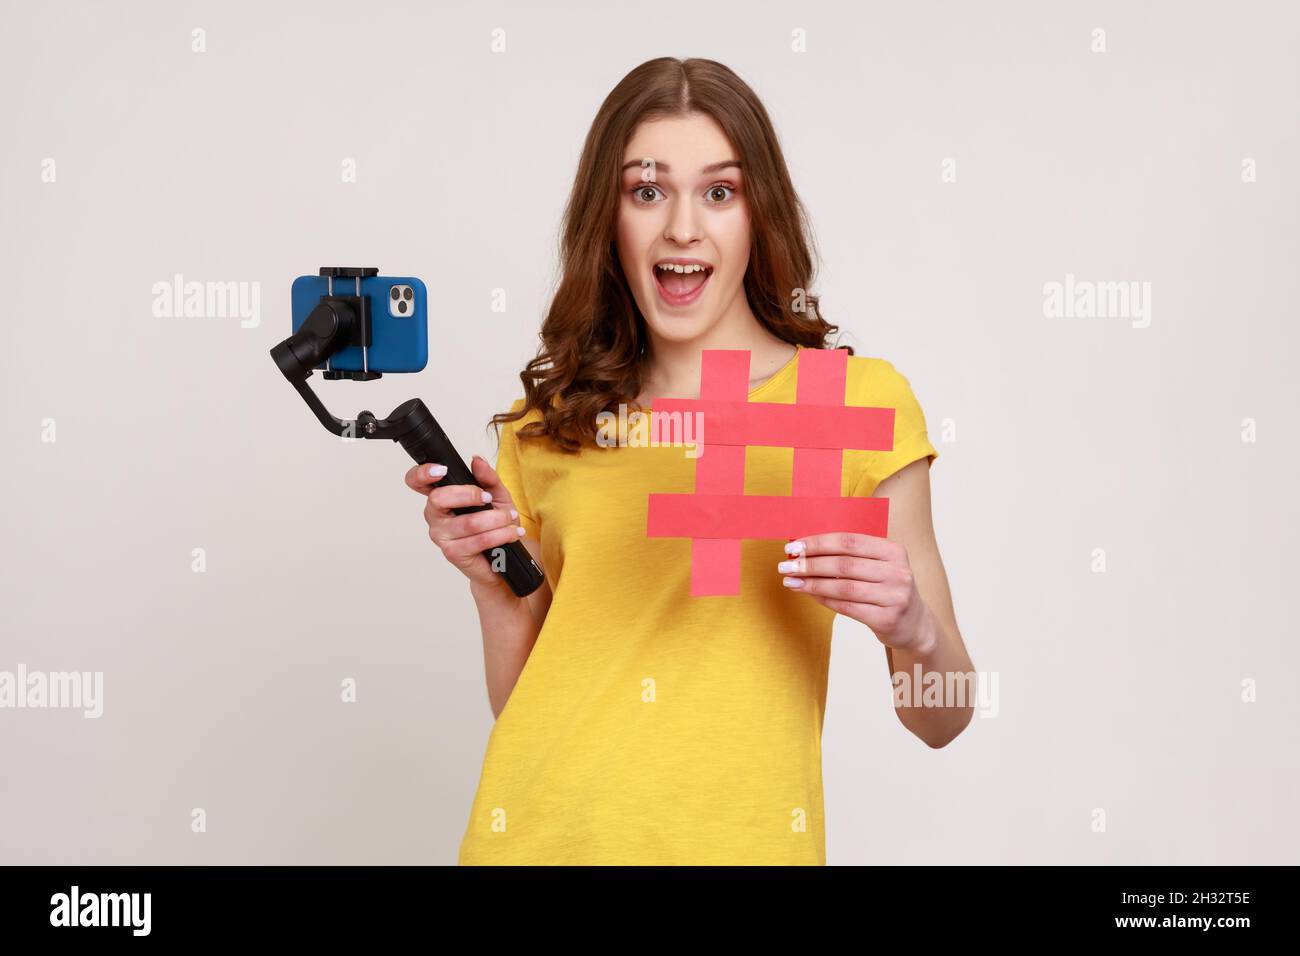 Una adolescente emocionada con el teléfono en el estabilizador lleva al videoblog, mirando la cámara con una expresión de alegría, mostrando el símbolo rojo de etiqueta hashtag. Estudio en interior grabado aislado sobre fondo gris. Foto de stock